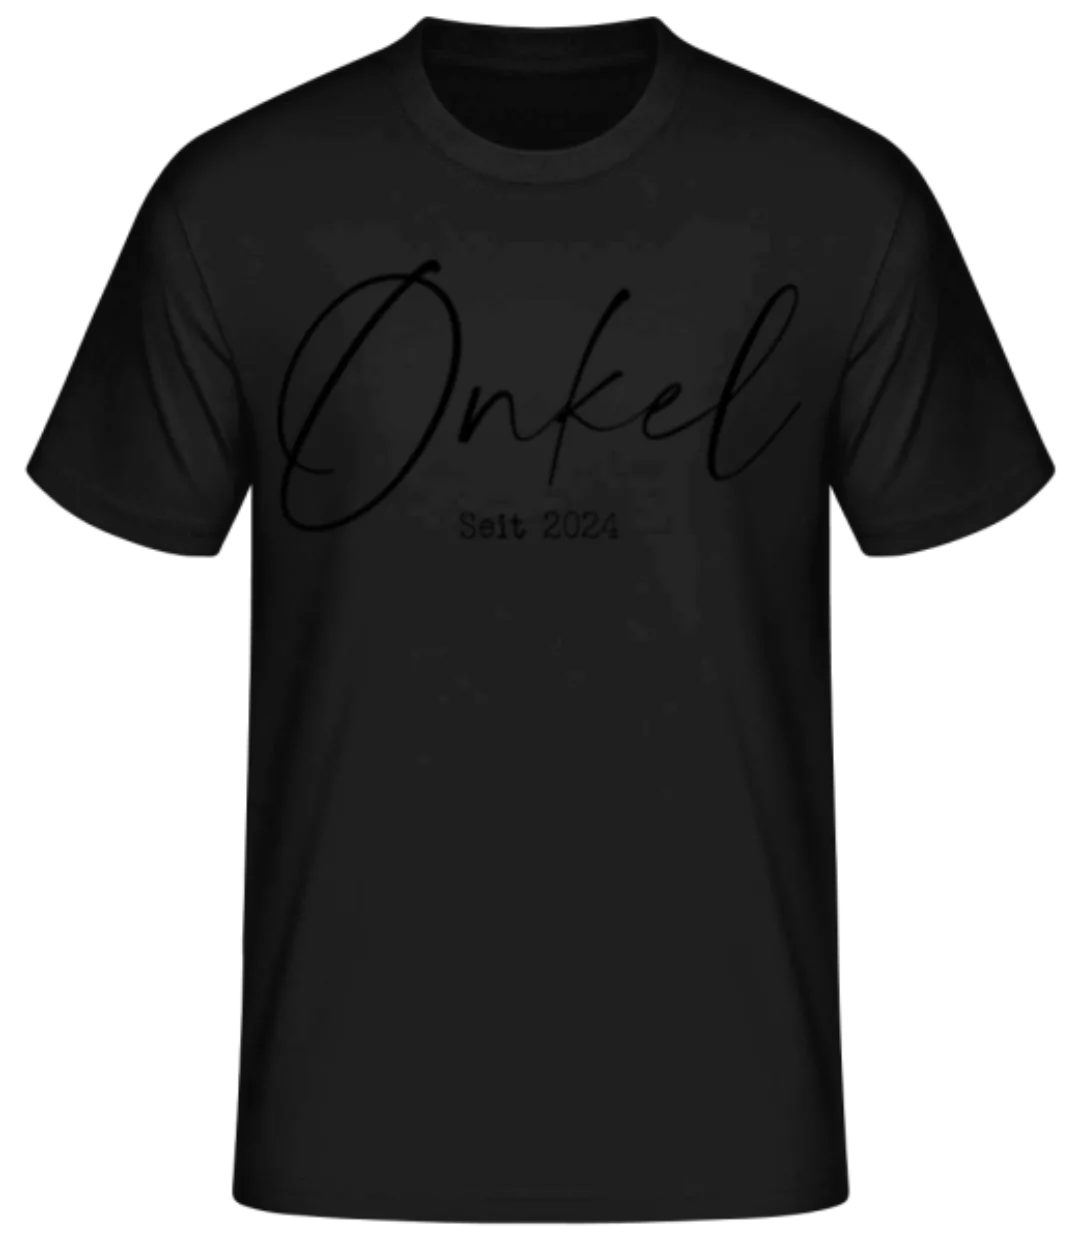 Onkel Seit 2024 · Männer Basic T-Shirt günstig online kaufen